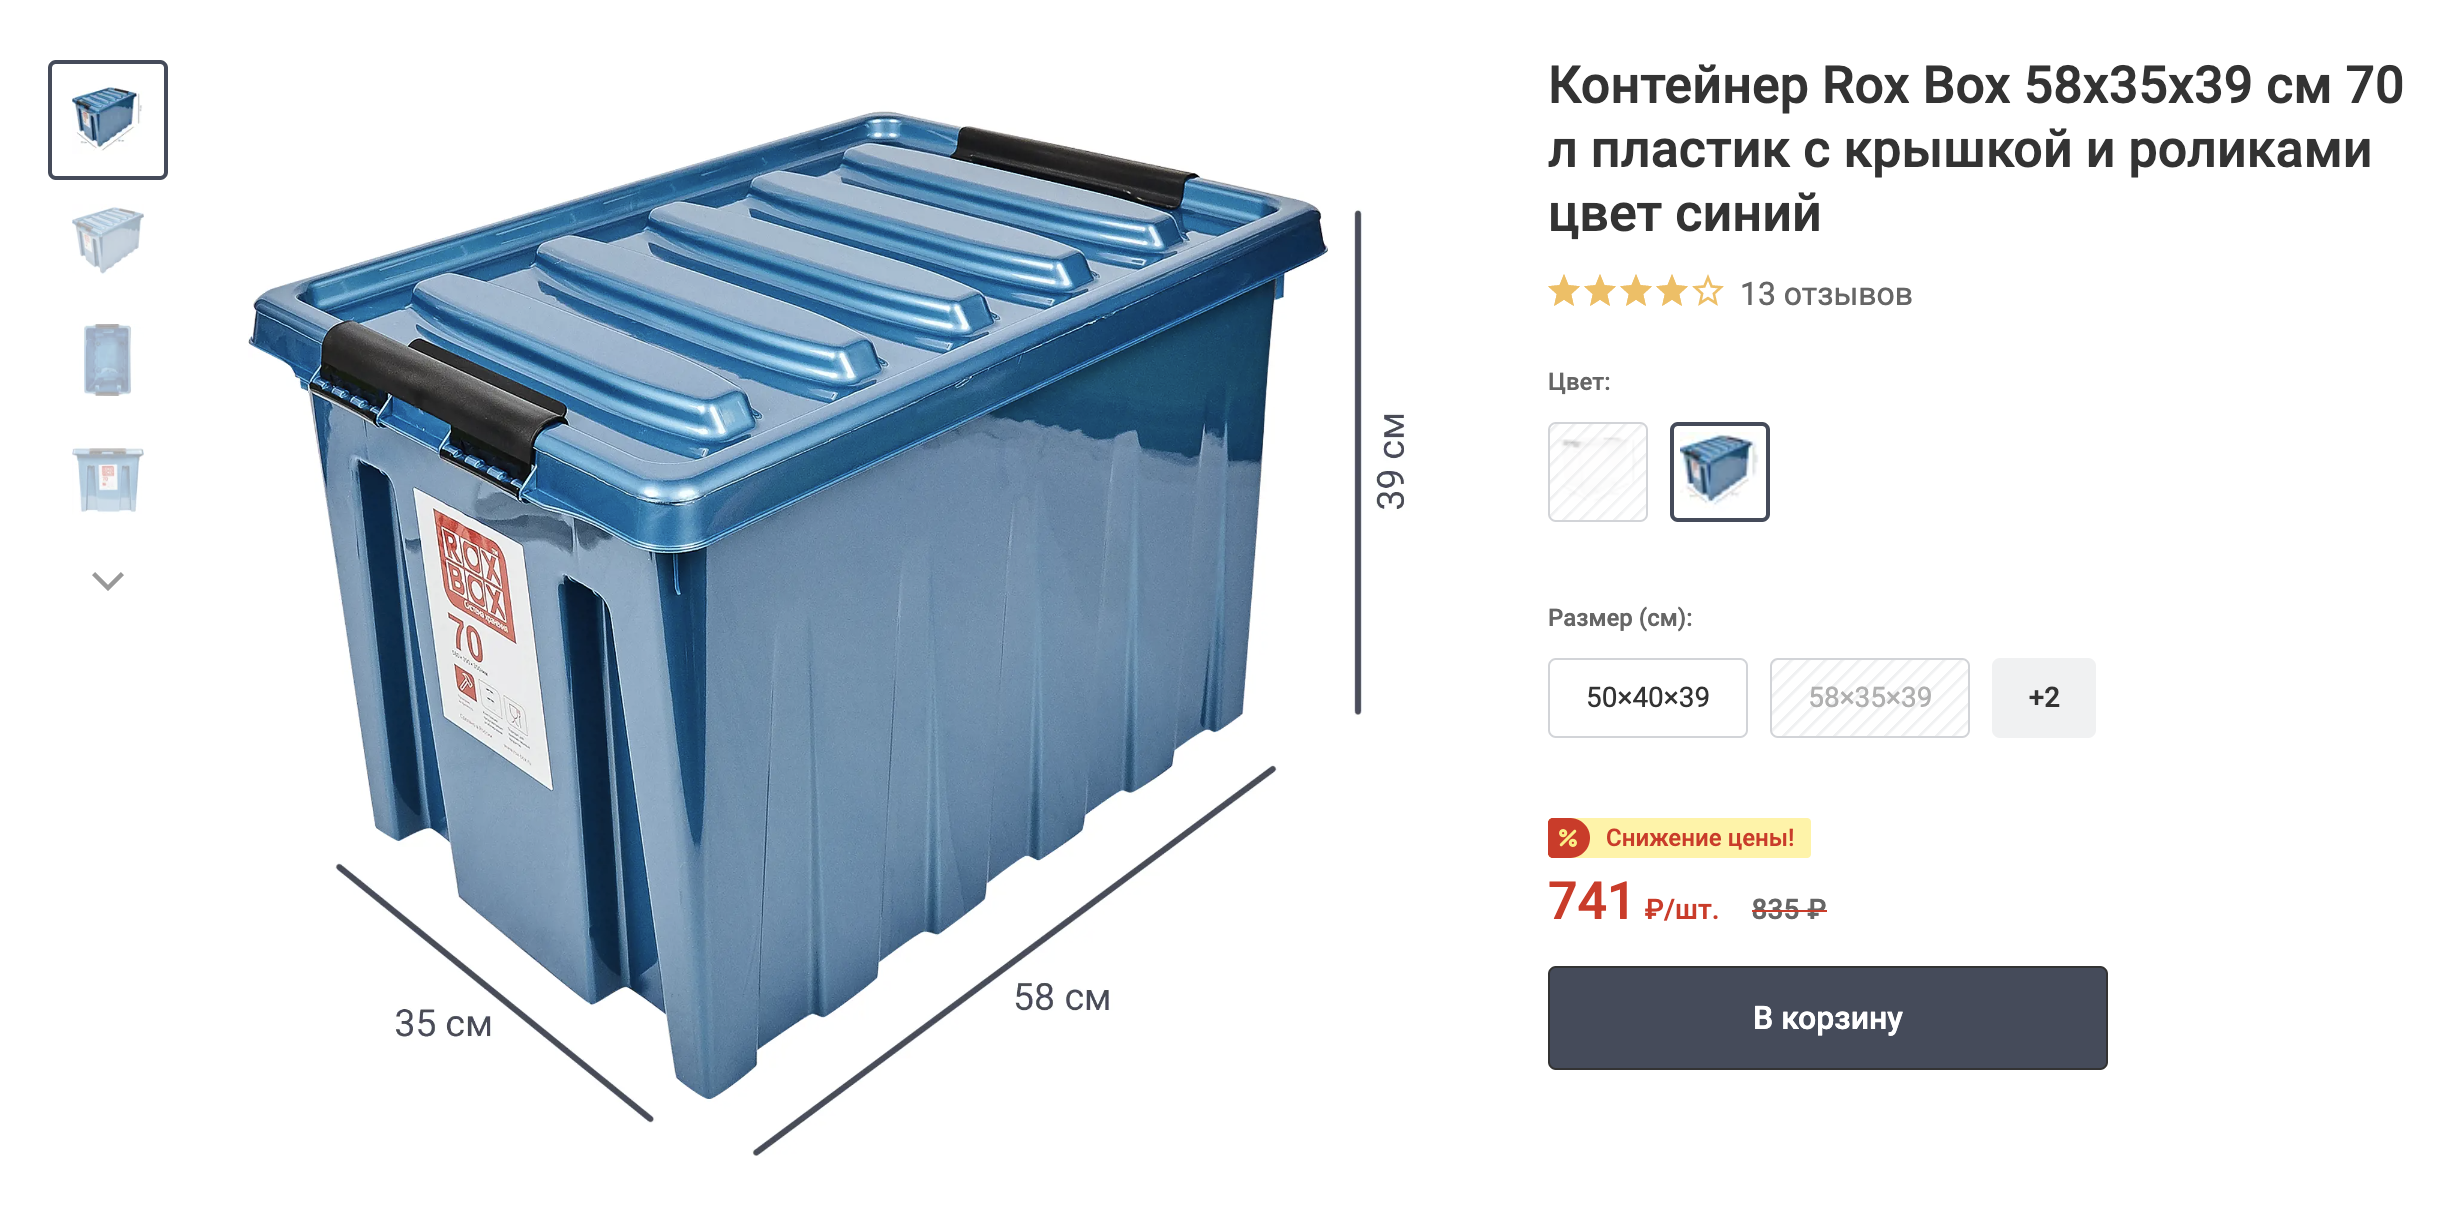 А вот непрозрачный контейнер. Источник: leroymerlin.ru